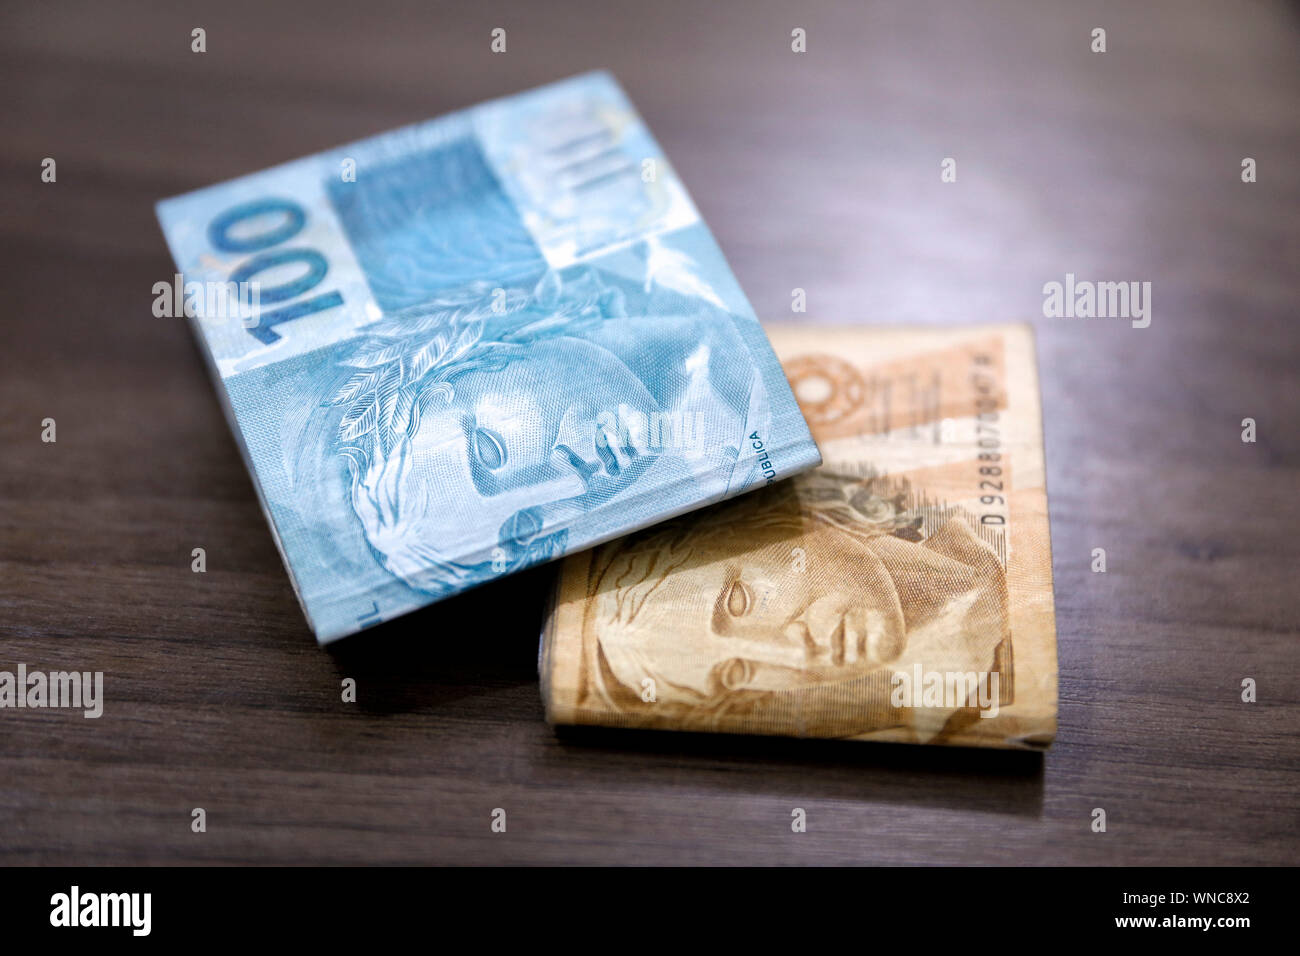 Billets Real brésilien notes, de l'argent en provenance du Brésil, les notes de Real, le Brésil Billet de BRL, monnaie brésilienne, l'économie et des affaires. Banque D'Images